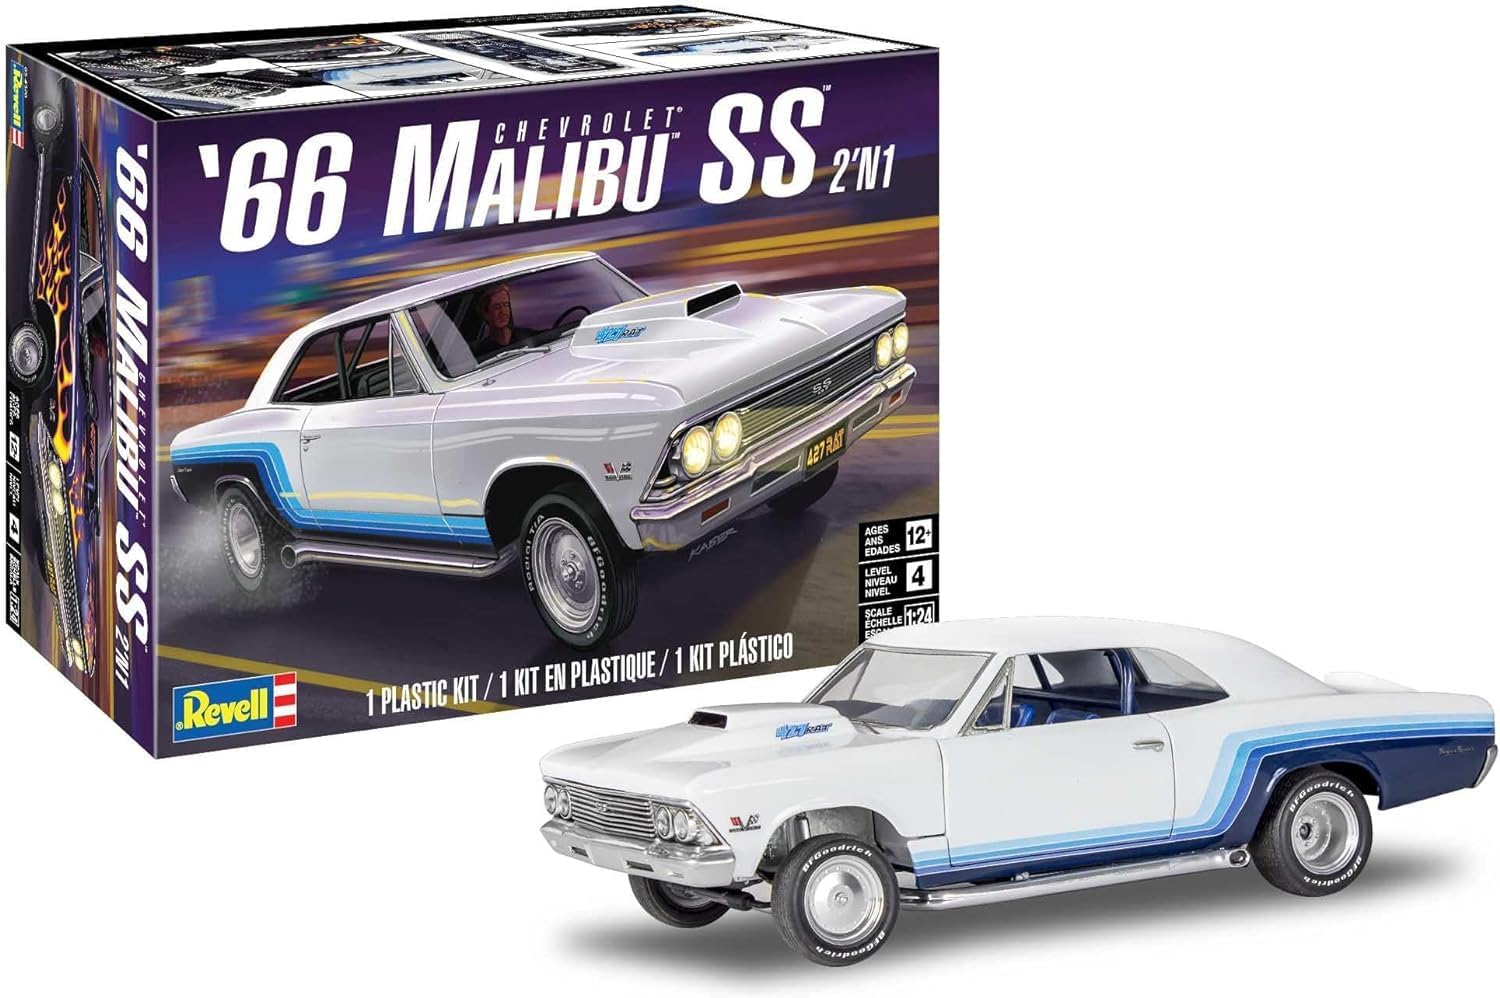 Revell 85-4520 1966 Chevrolet Malibu SS 2’N1 1/24 Scale Model Kit